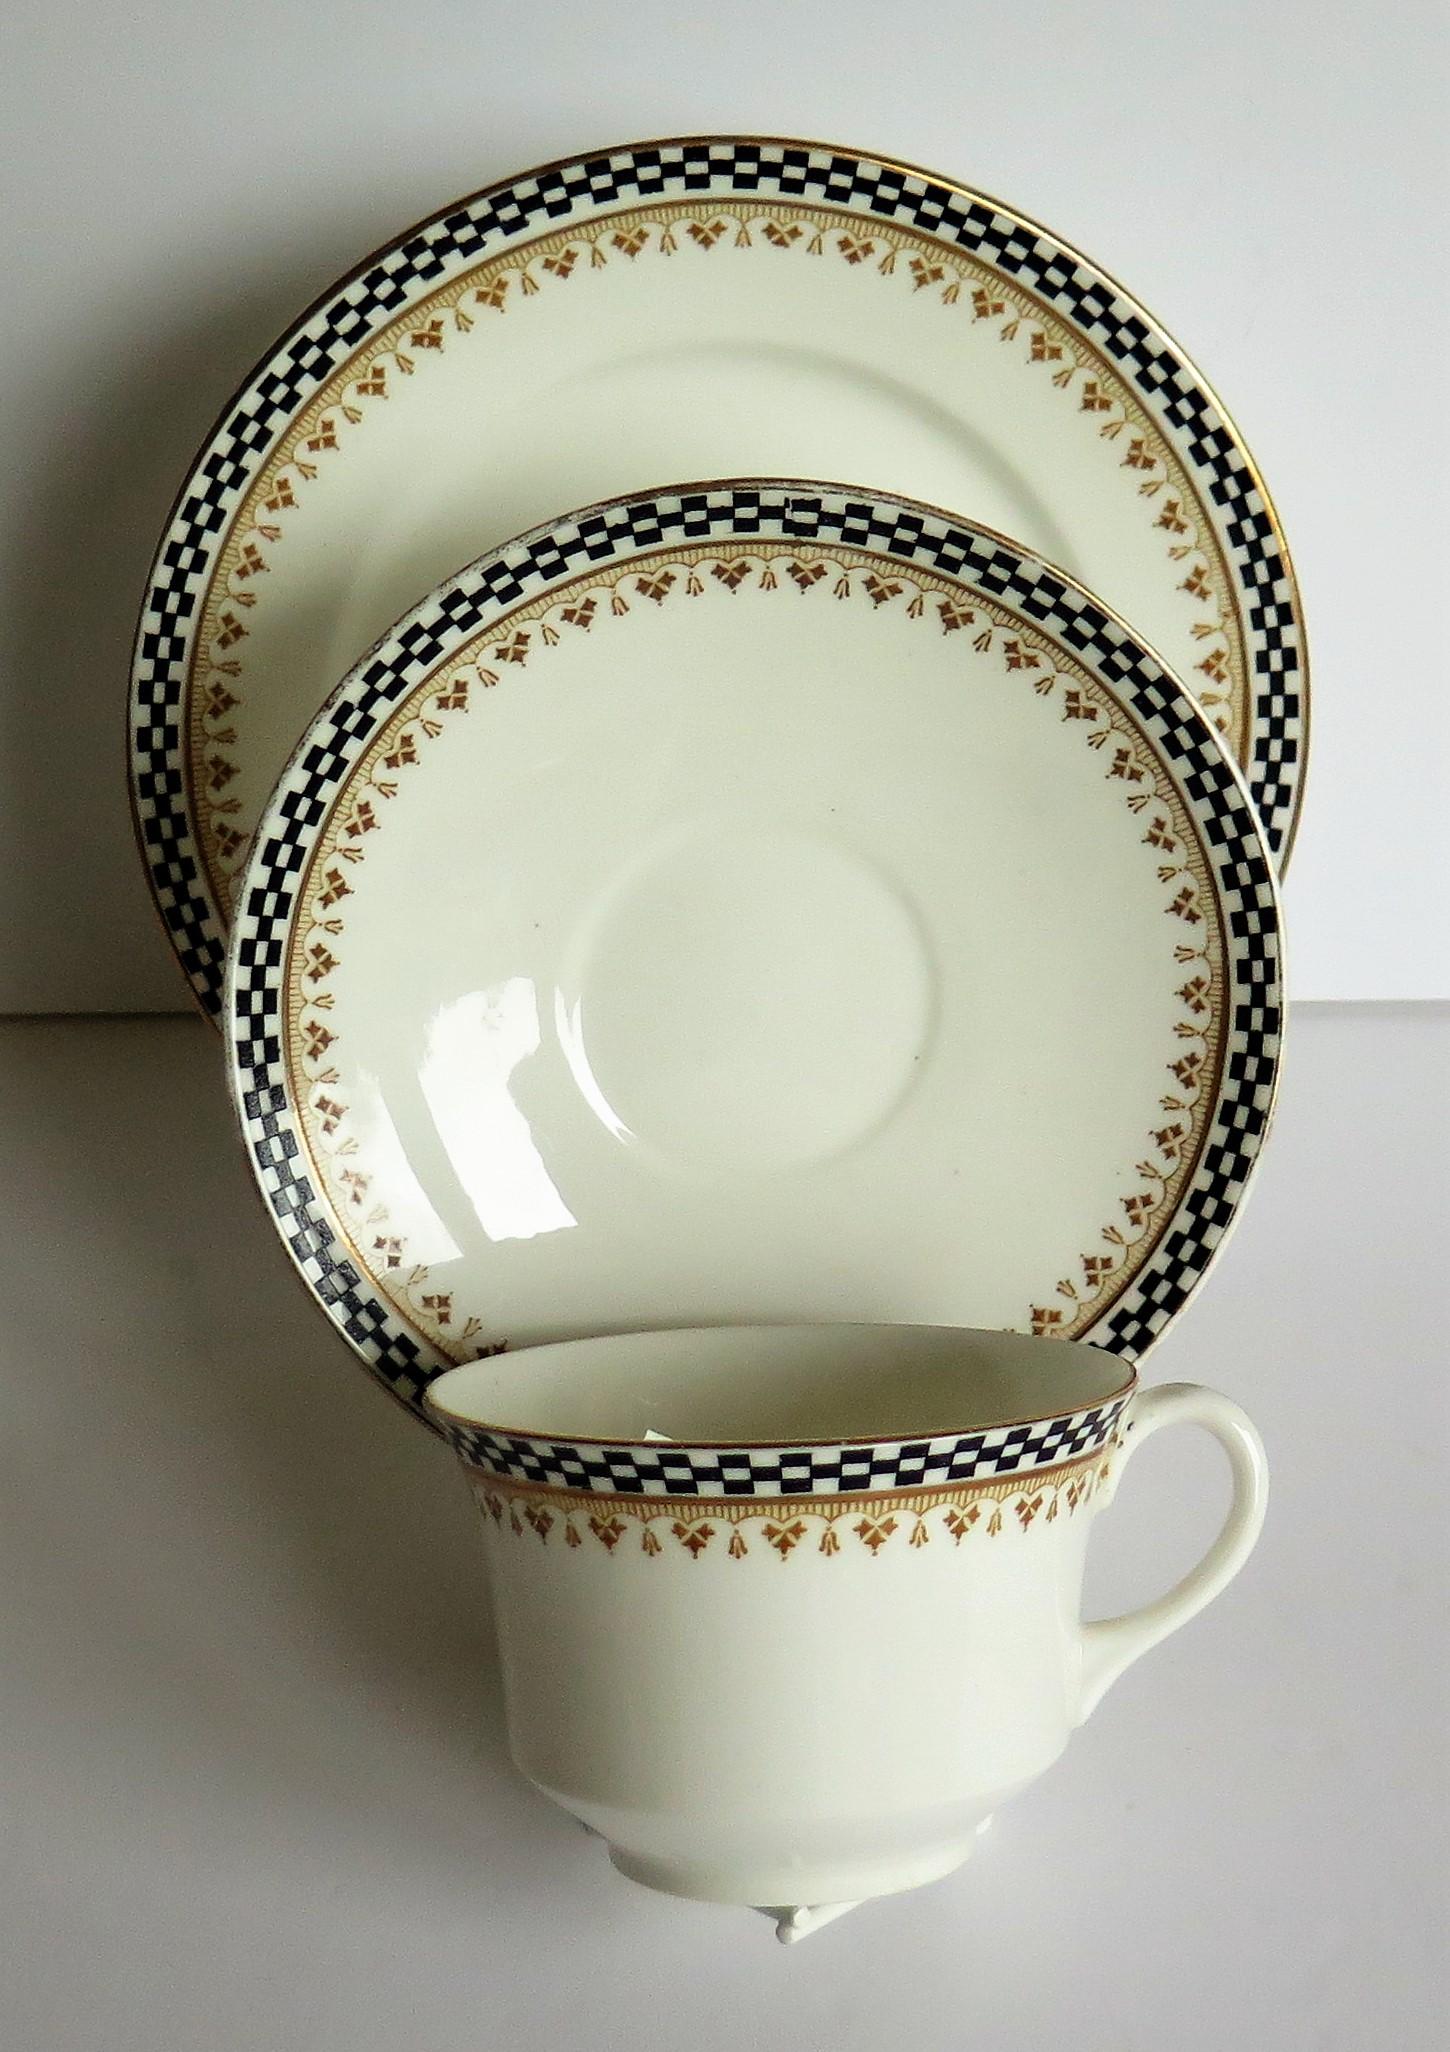 Art Deco period Shelley Porcelain 13 Piece Part Tea Set ptn 10797, circa 1920 For Sale 3